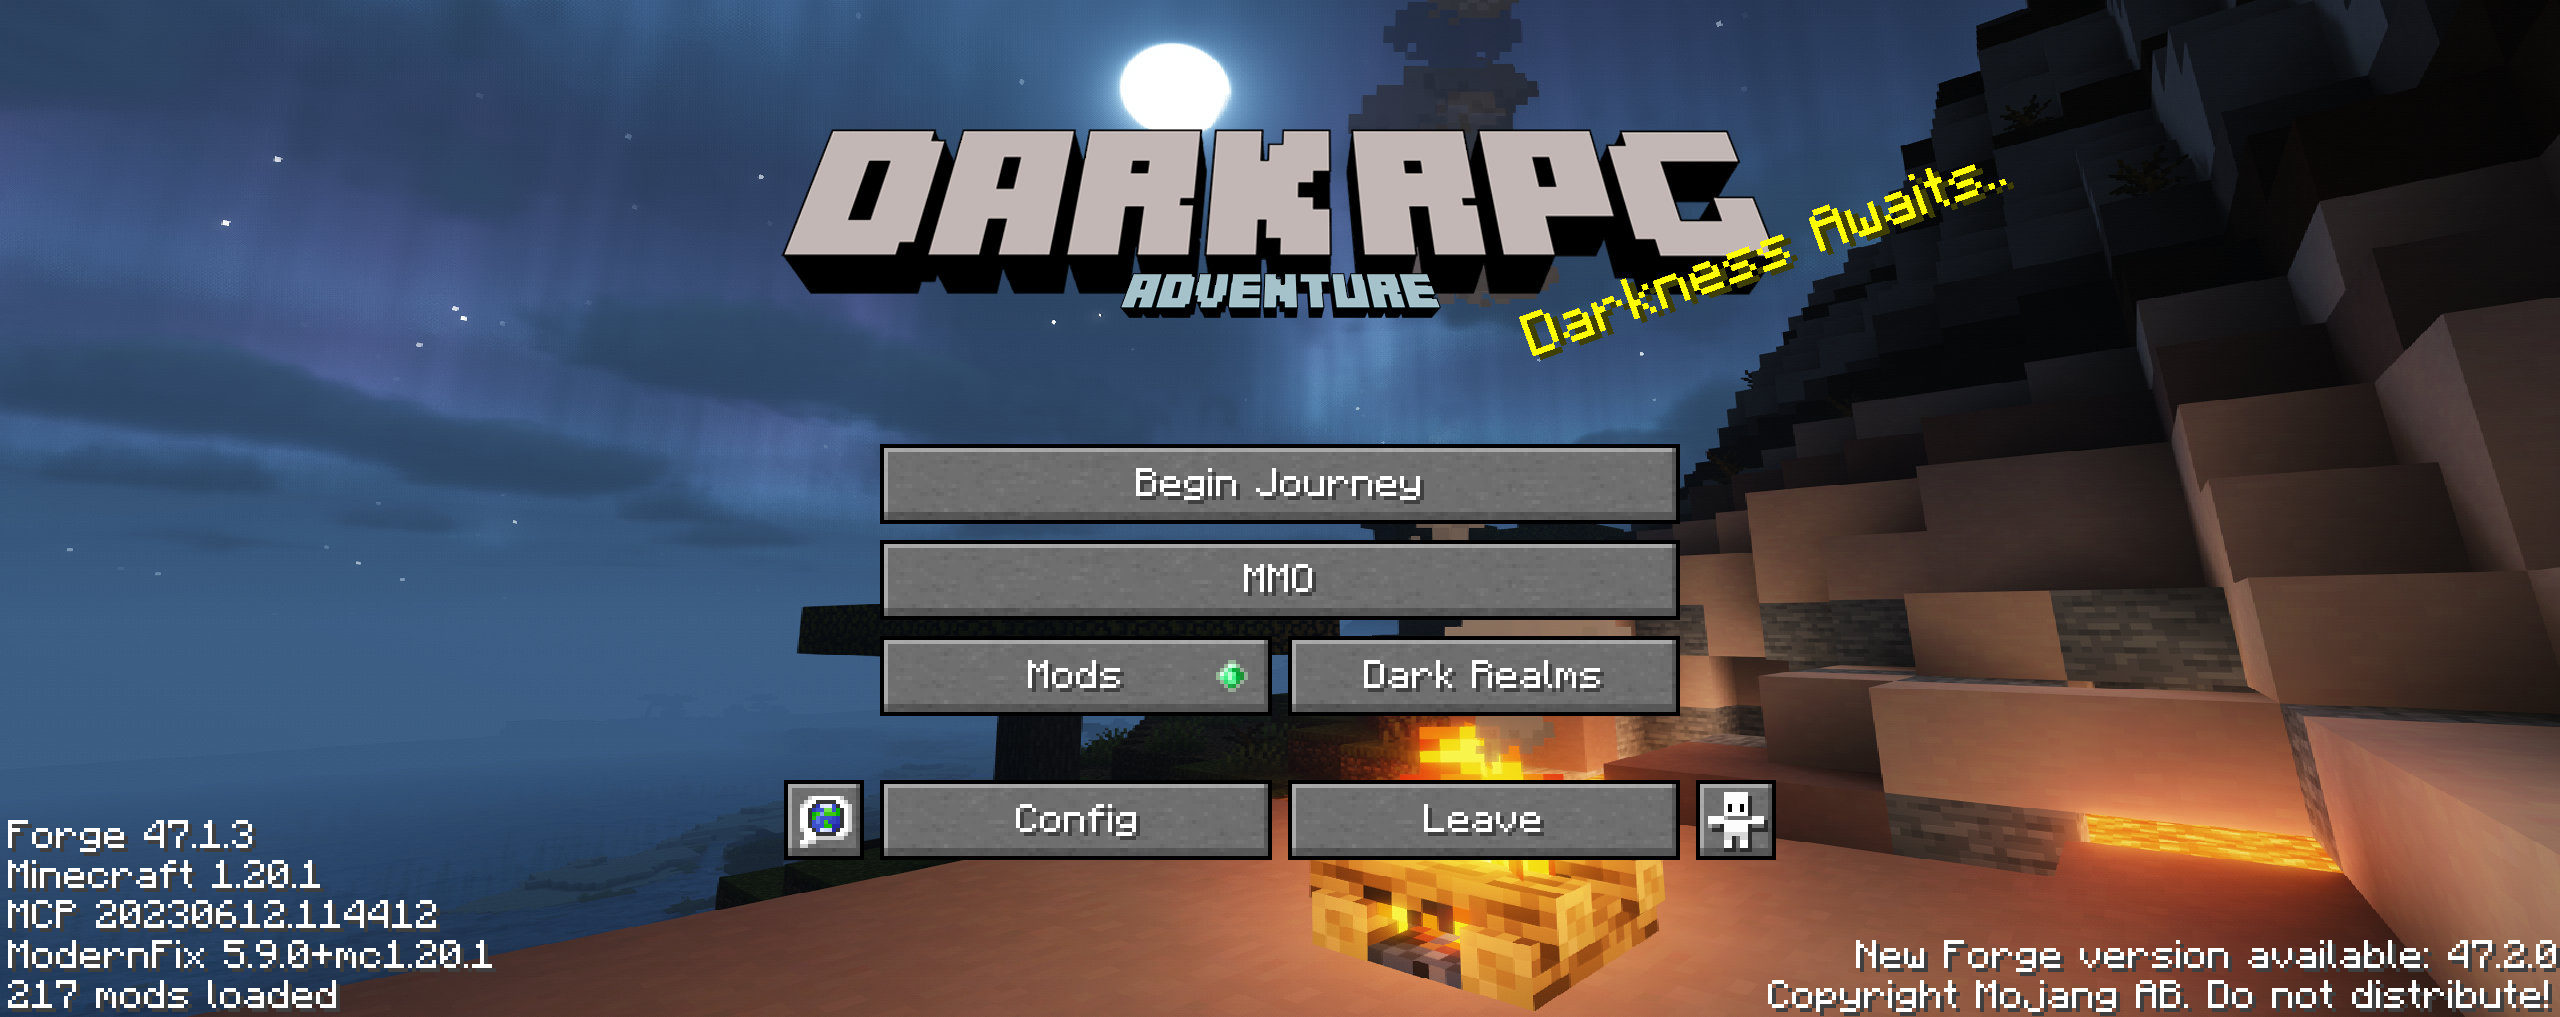 Update] DarkRPG Modpack Roguebane Edition